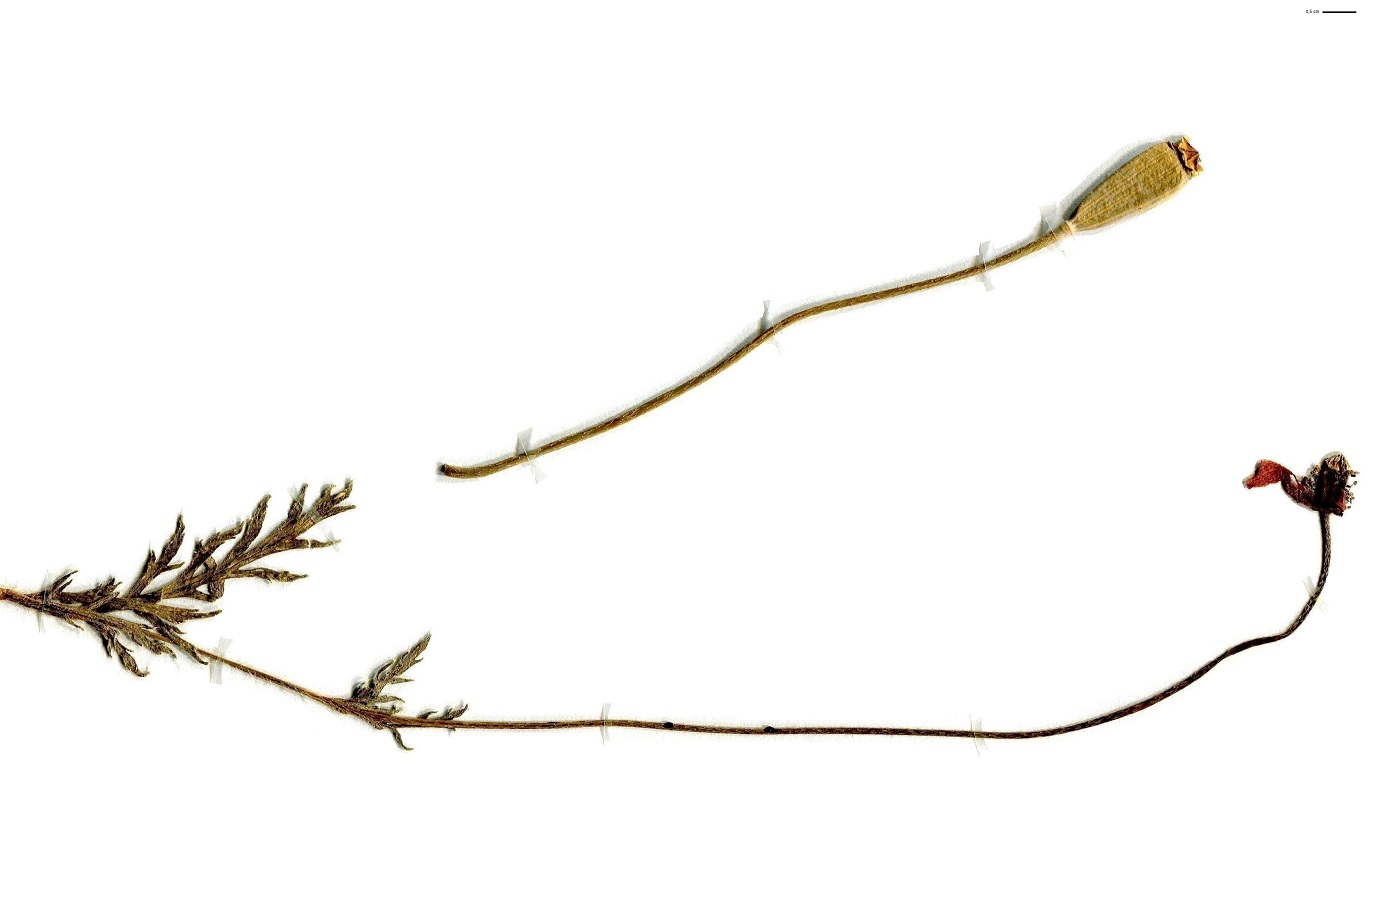 Papaver dubium subsp. lecoqii (Papaveraceae)